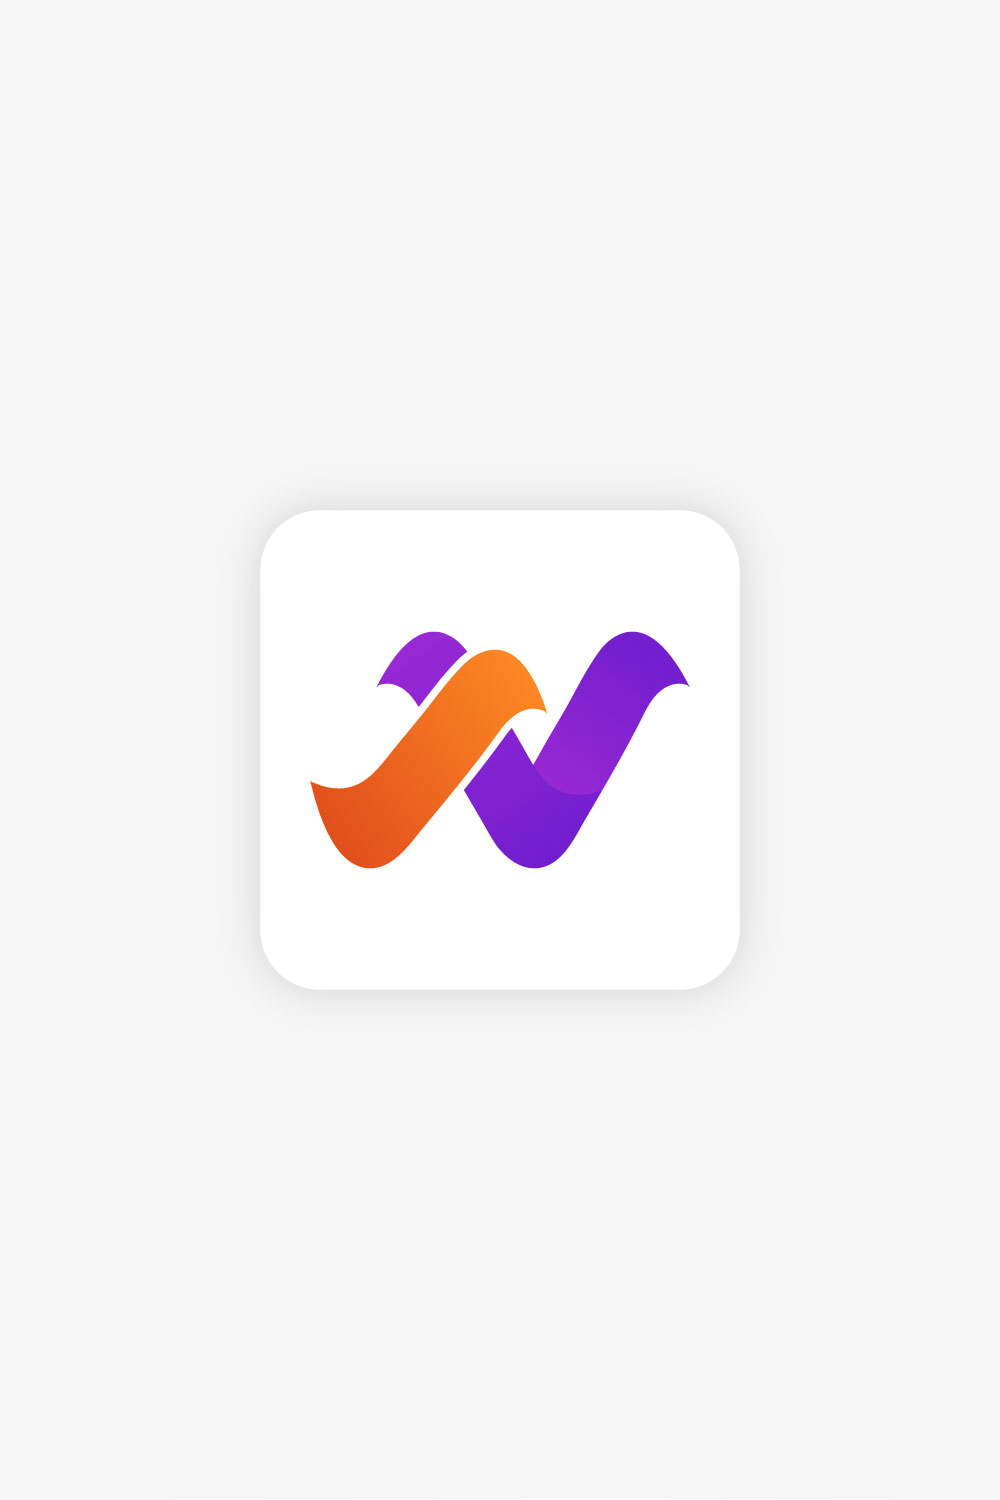 NV Letter Logo Design Template pinterest image.